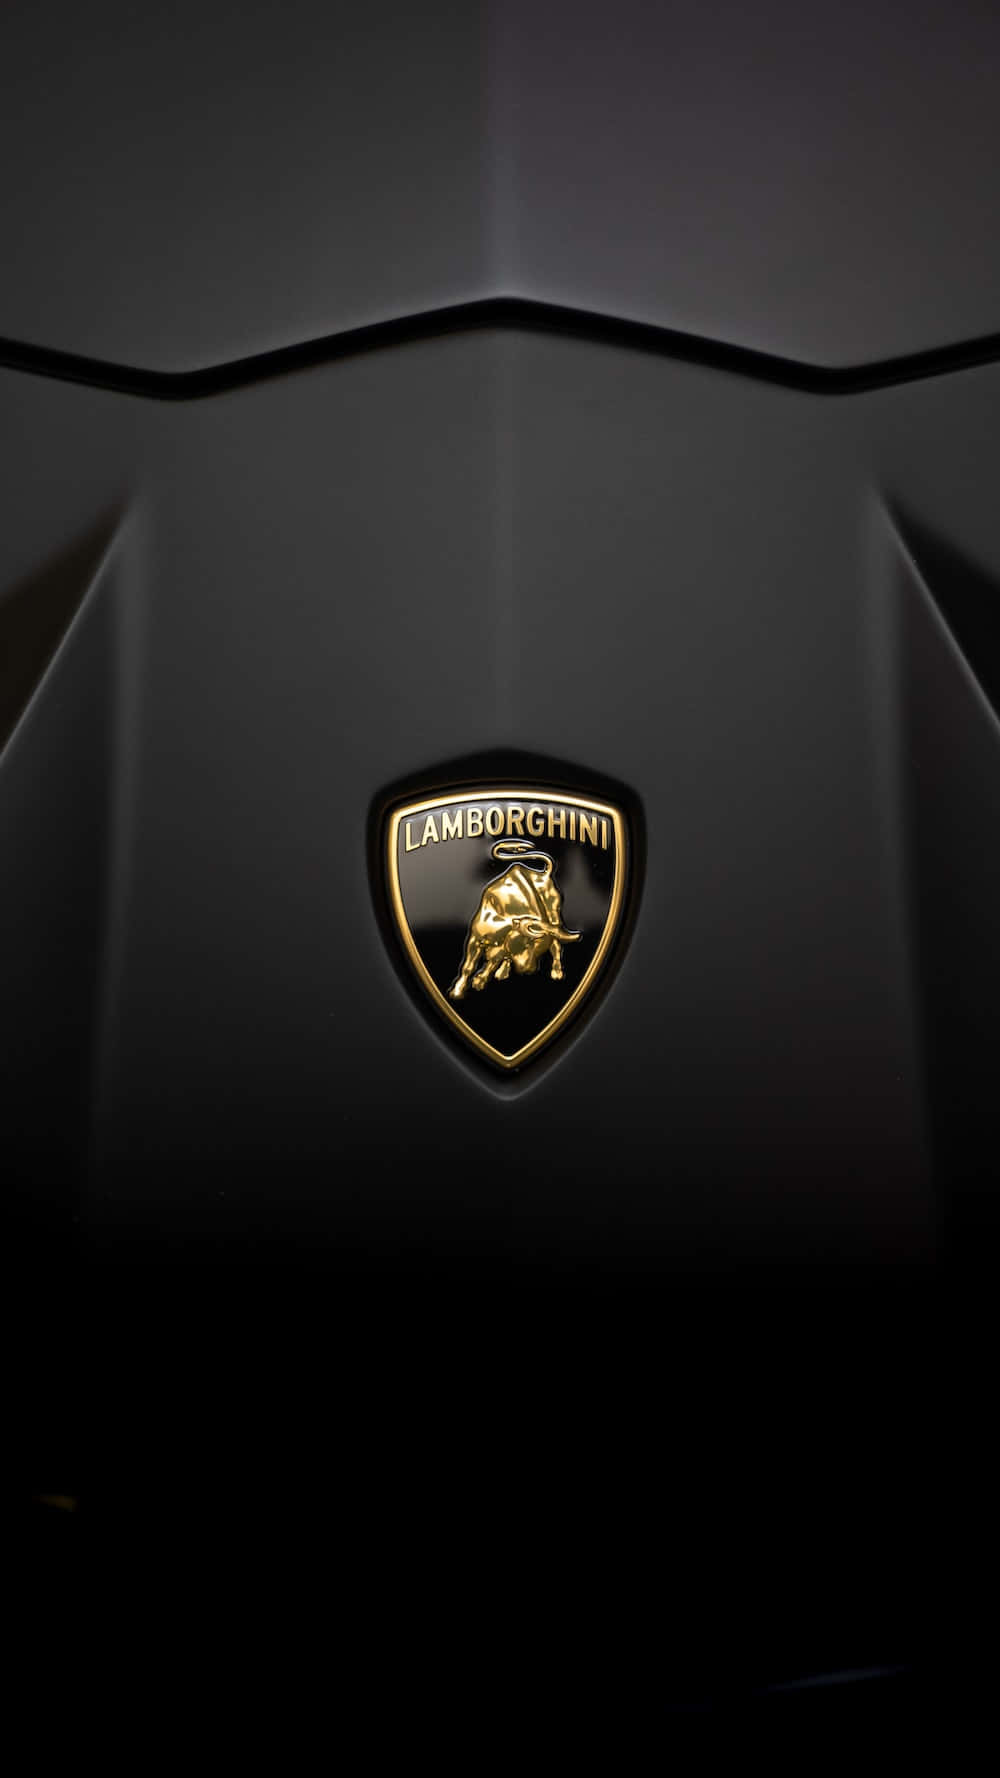 Lamborghinihuracan - Fondos De Pantalla